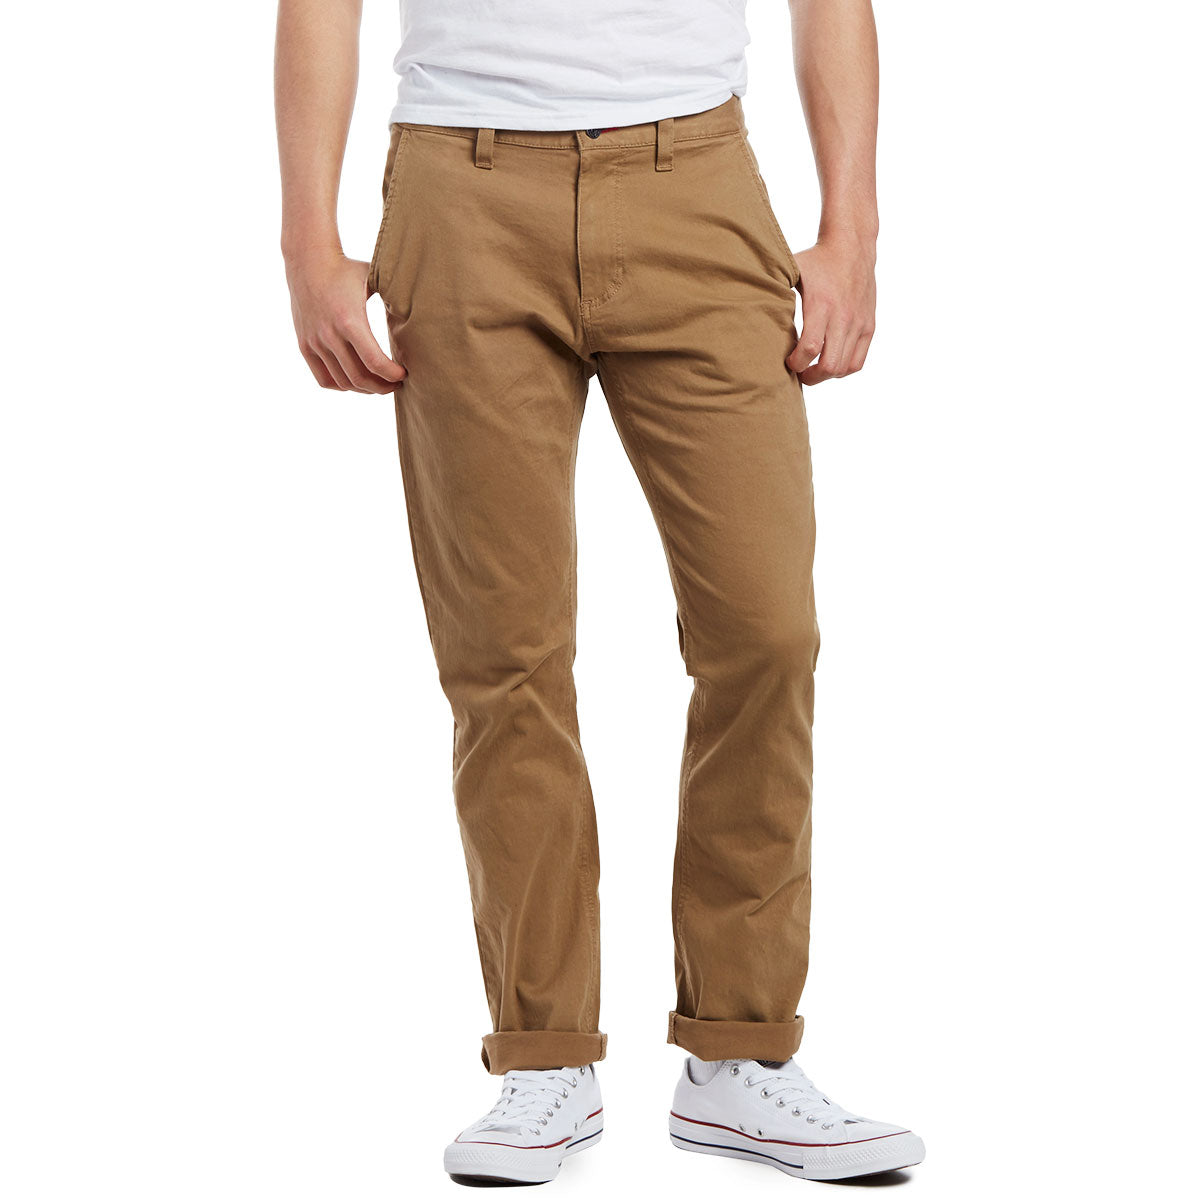 CCS Straight Fit Chino Pants - Khaki image 2